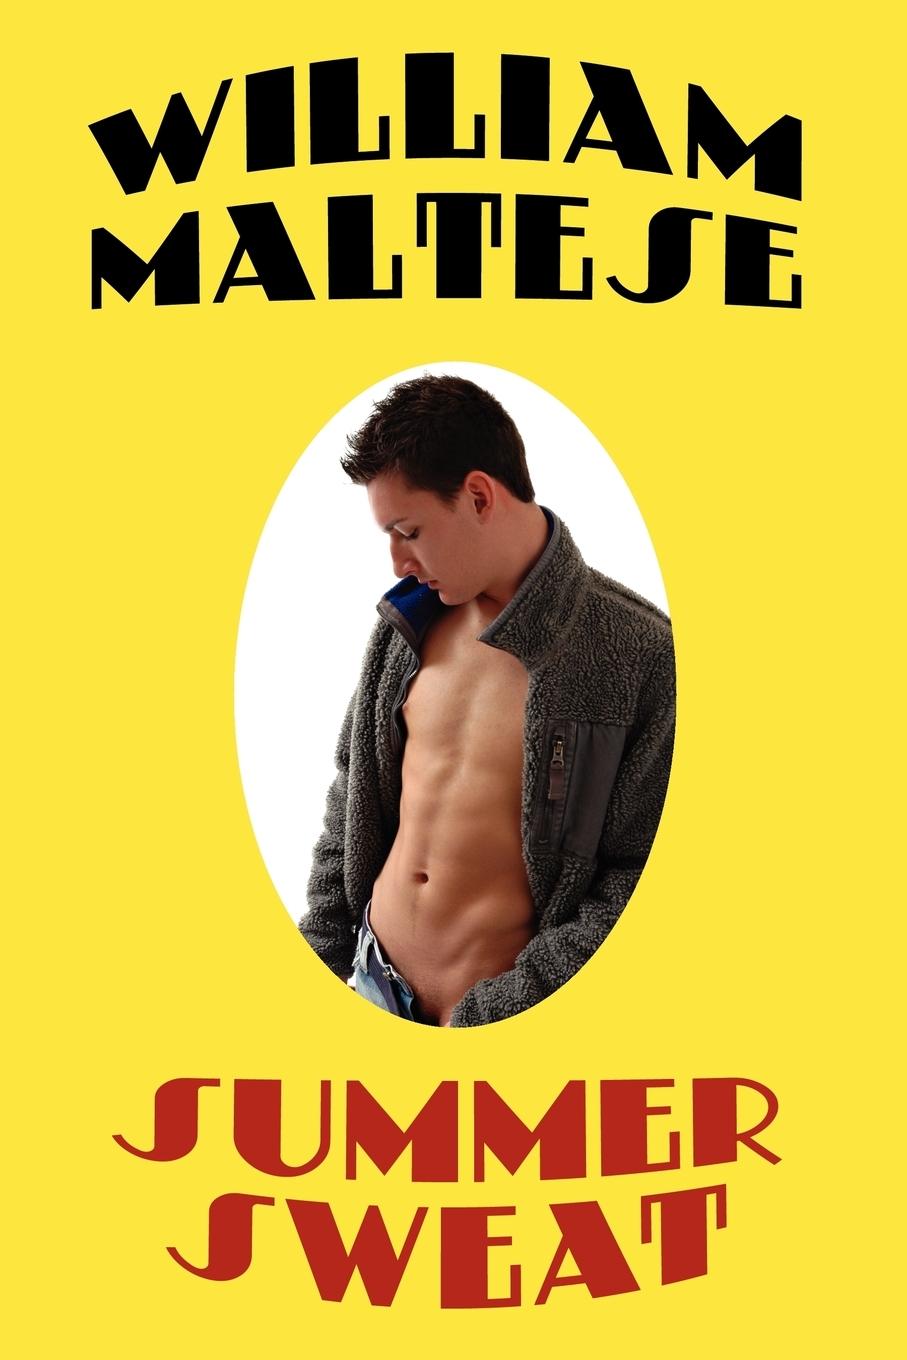 Summer Sweat - Maltese, William